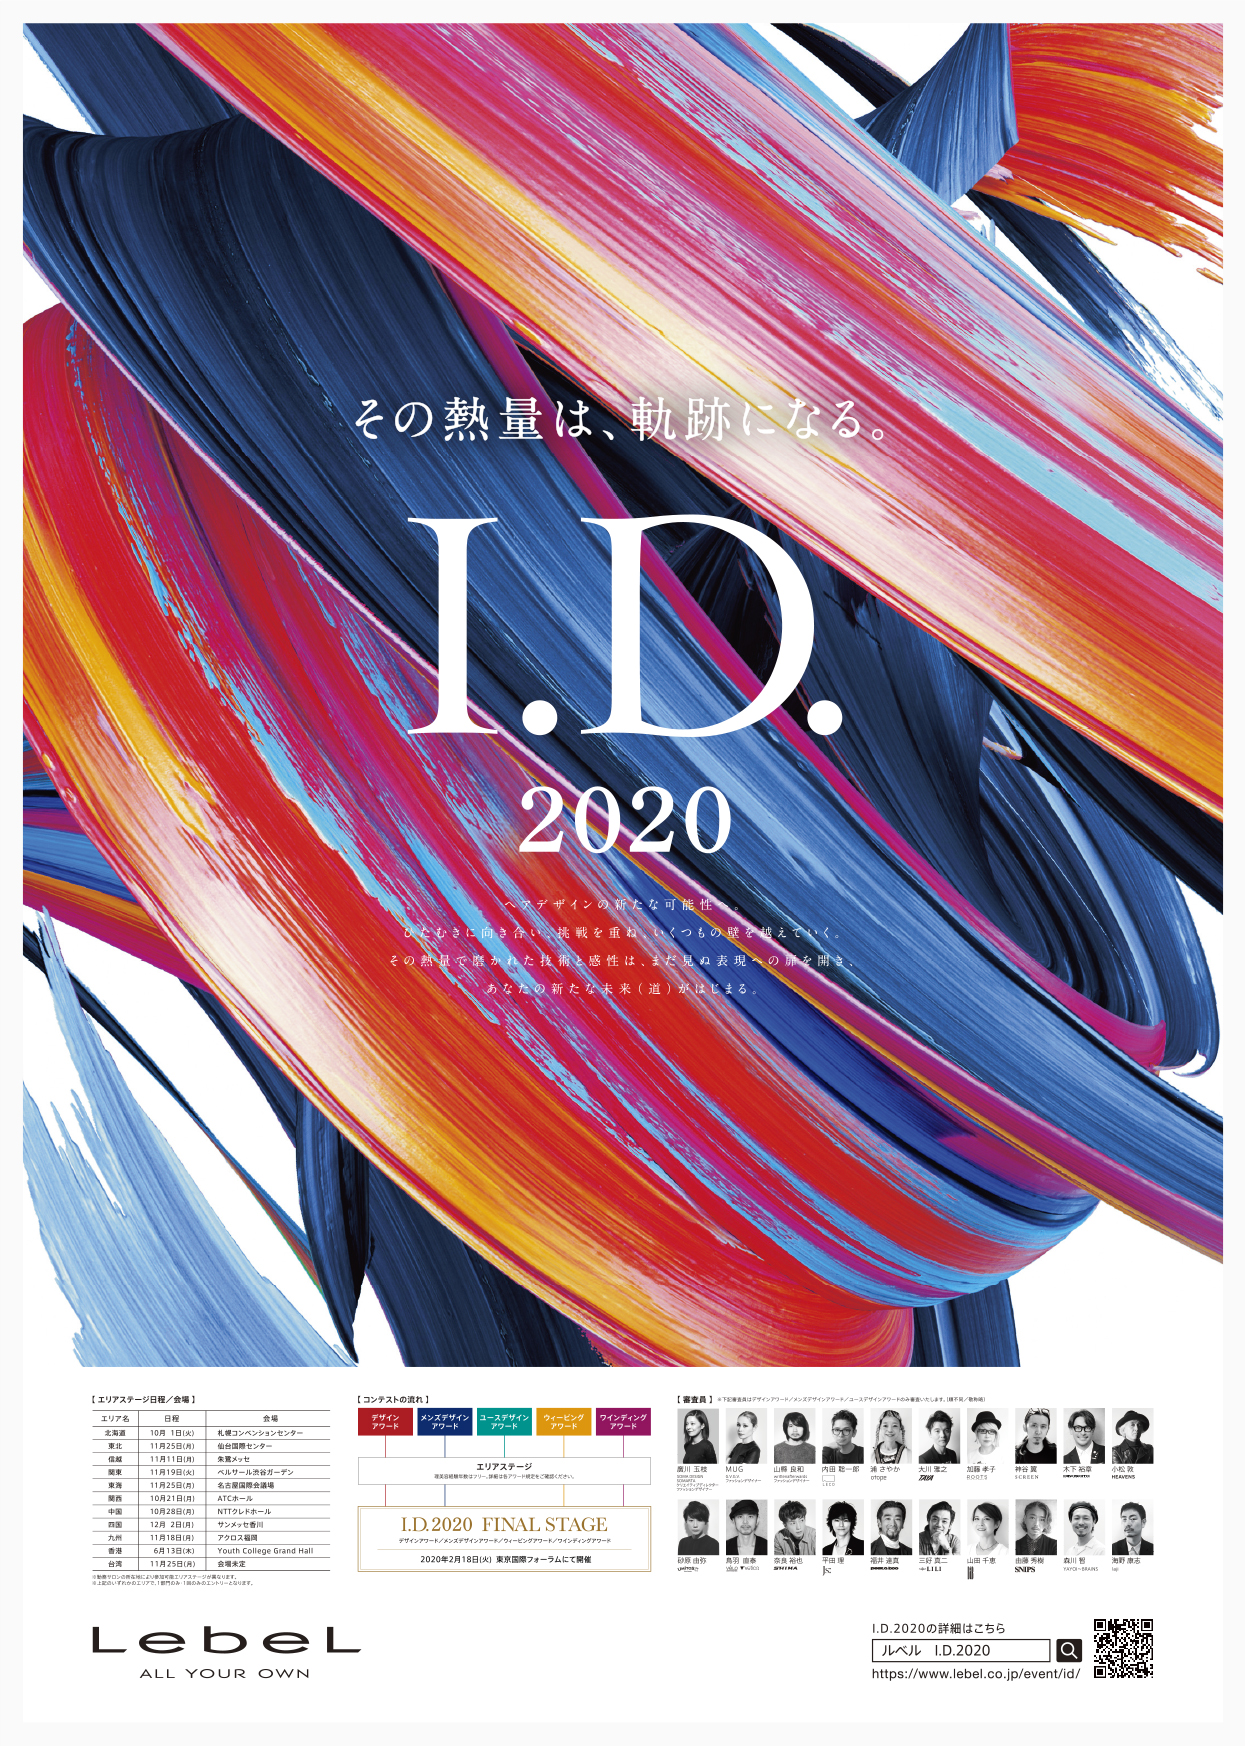 I D 2020 大阪 東京 デザイン会社 株式会社サンデザインアソシエーツ Sun Design Associates Co Ltd